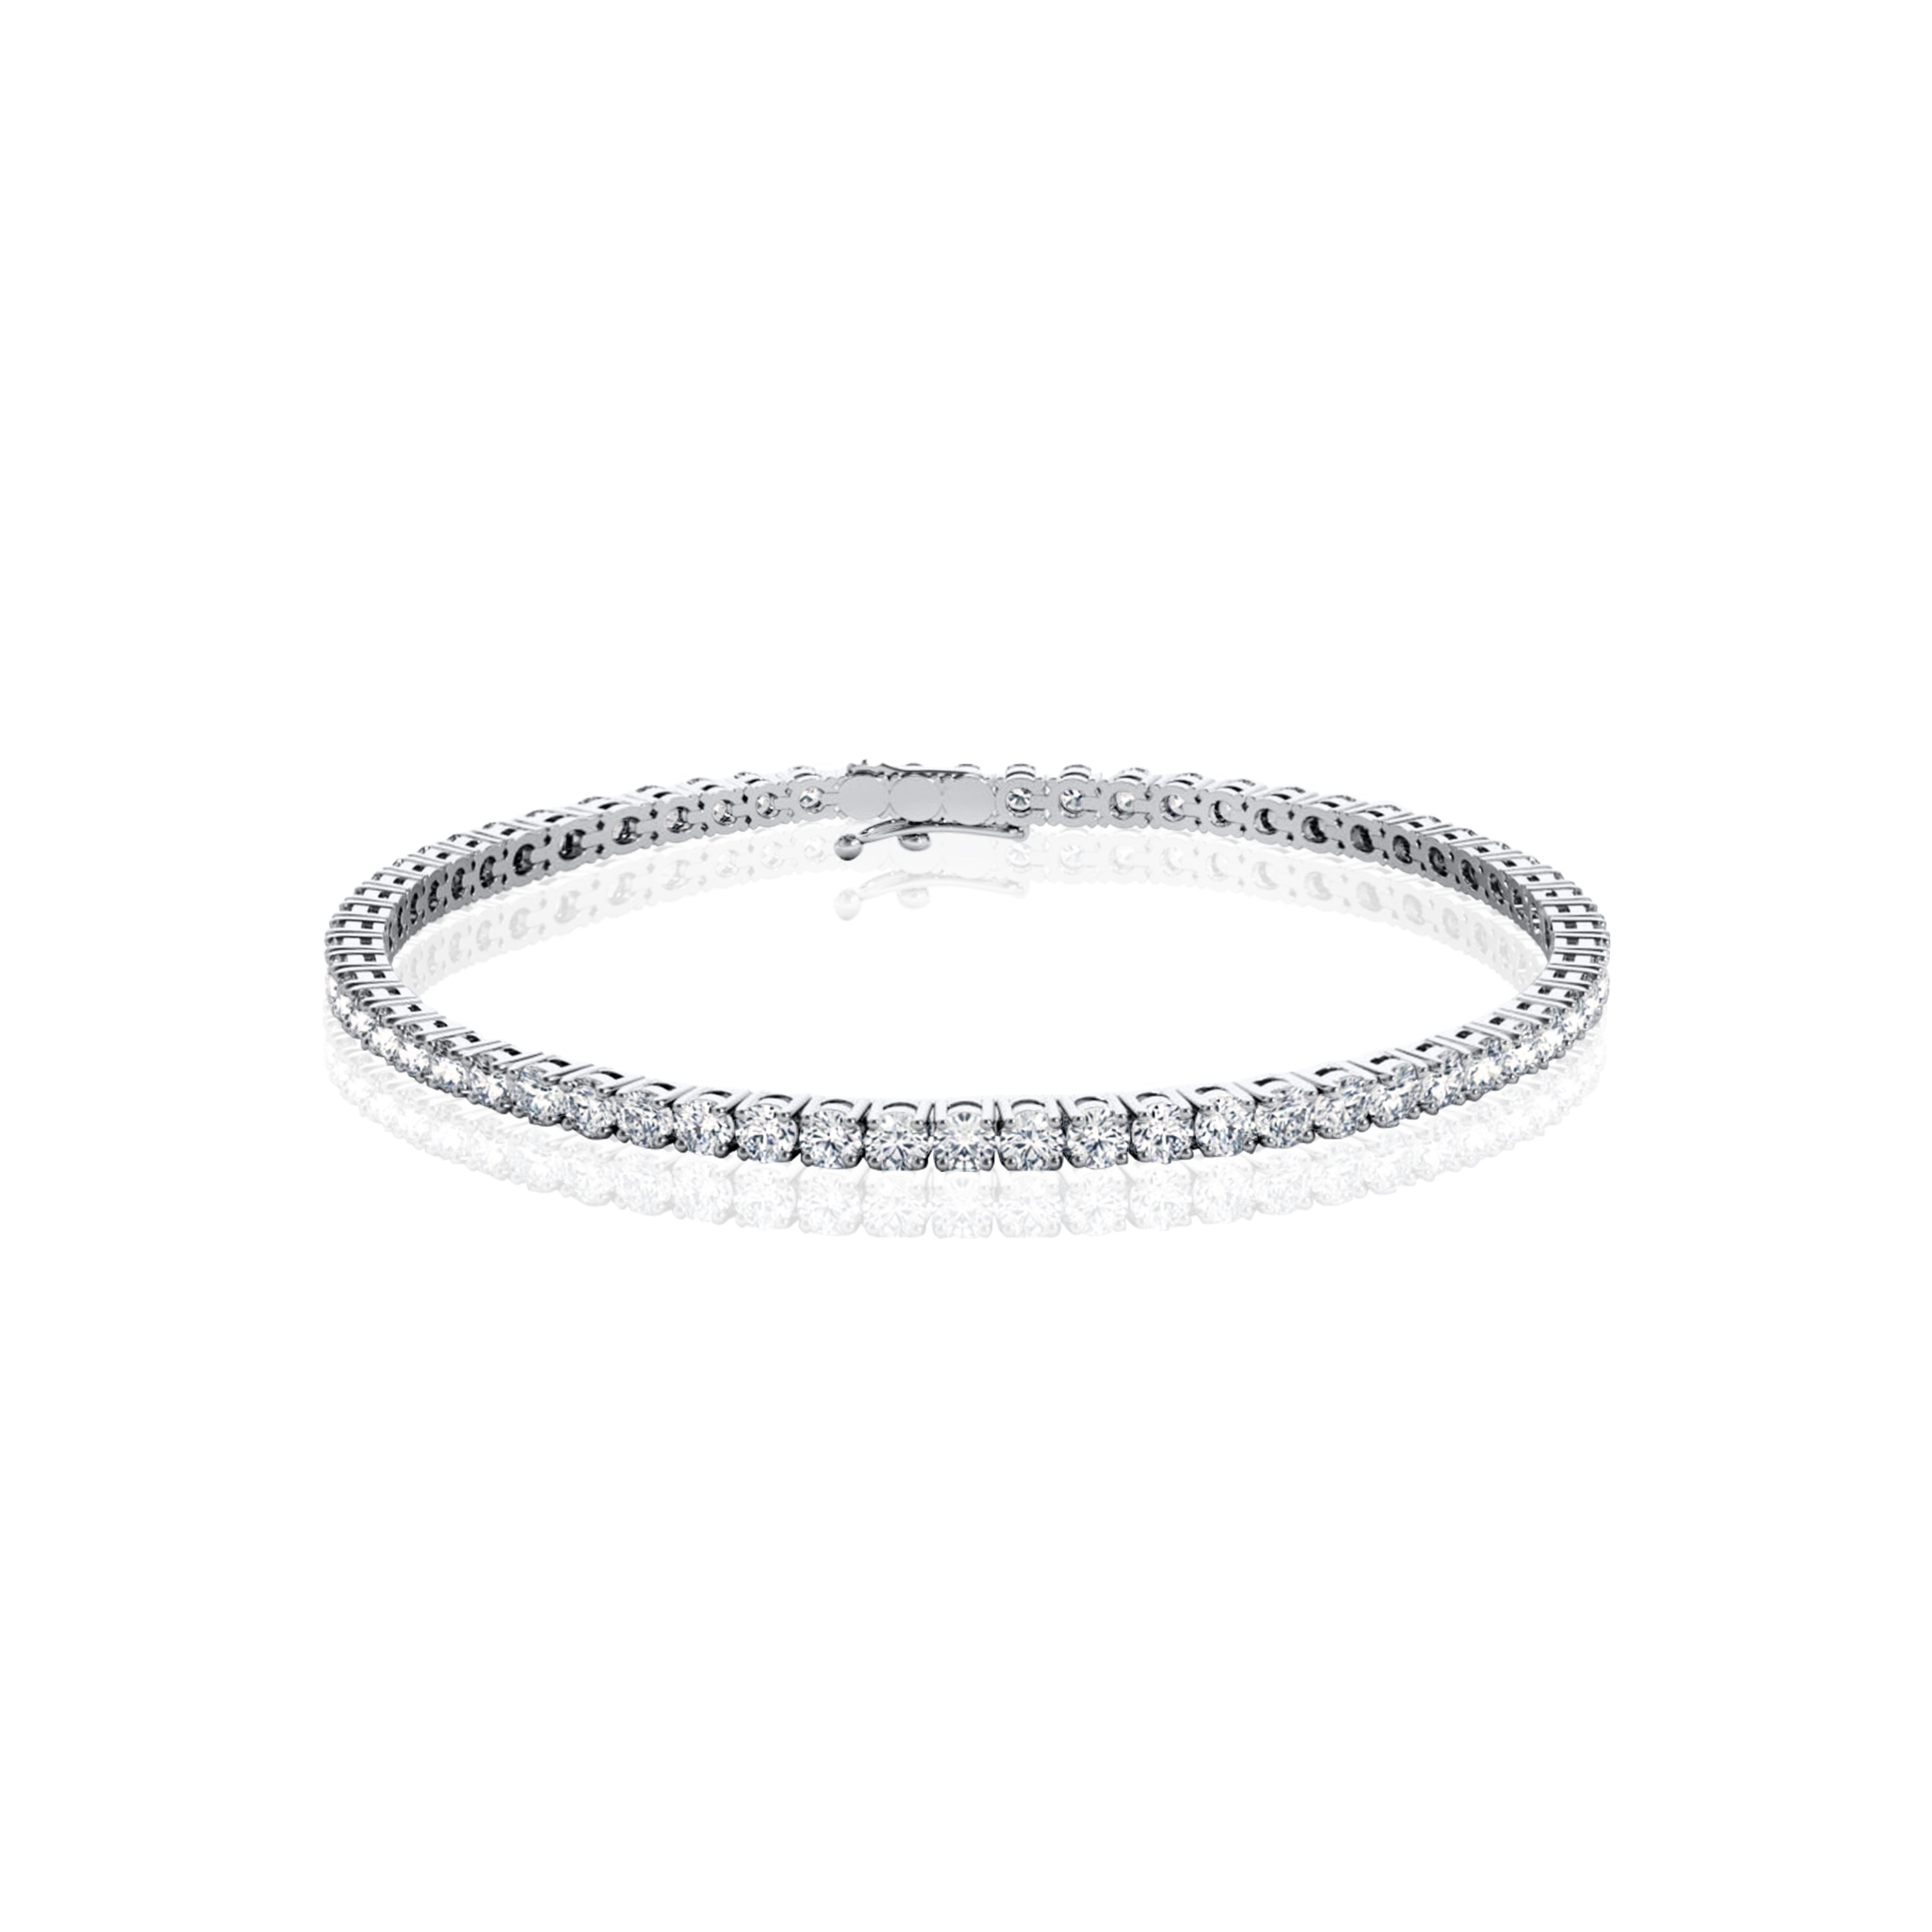 #Metal_18K White Gold#Bracelet Length_7.1” (Standard)